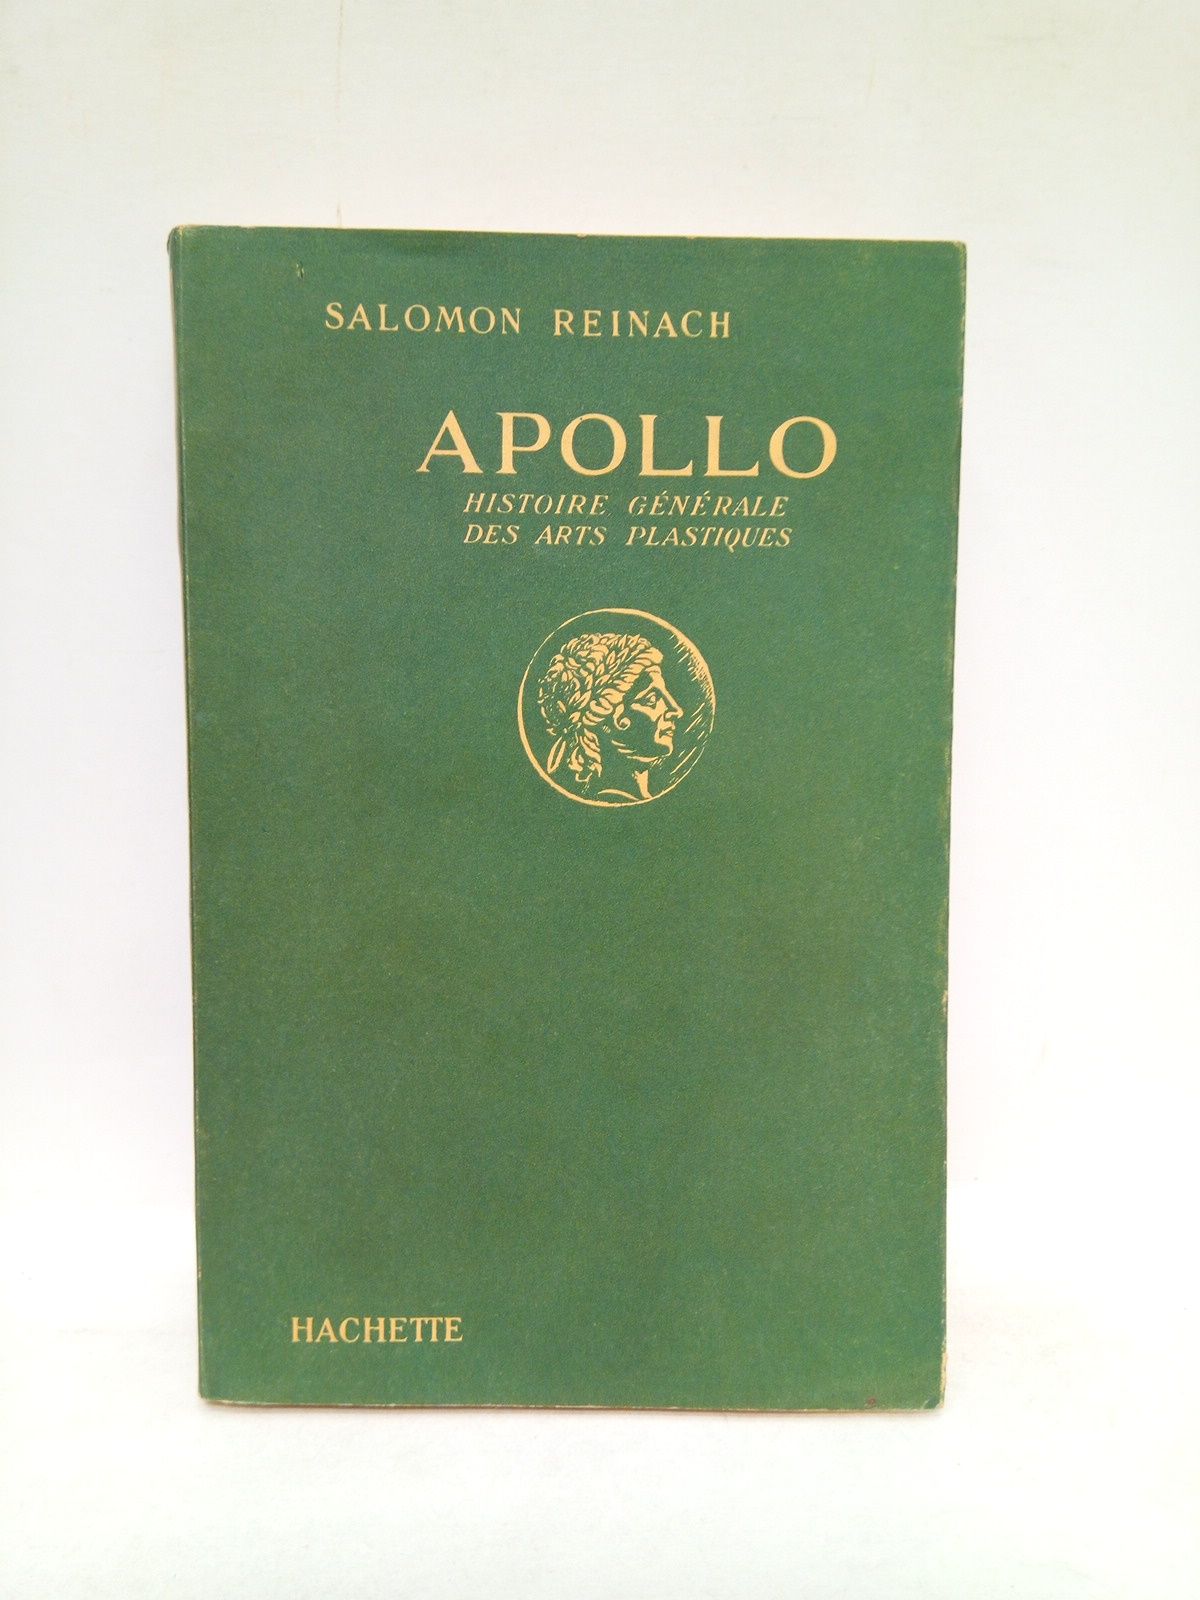 REINACH, Salomon - Apollo: Histoire gnrale des arts plastiques professe a l'Ecole du Louvre